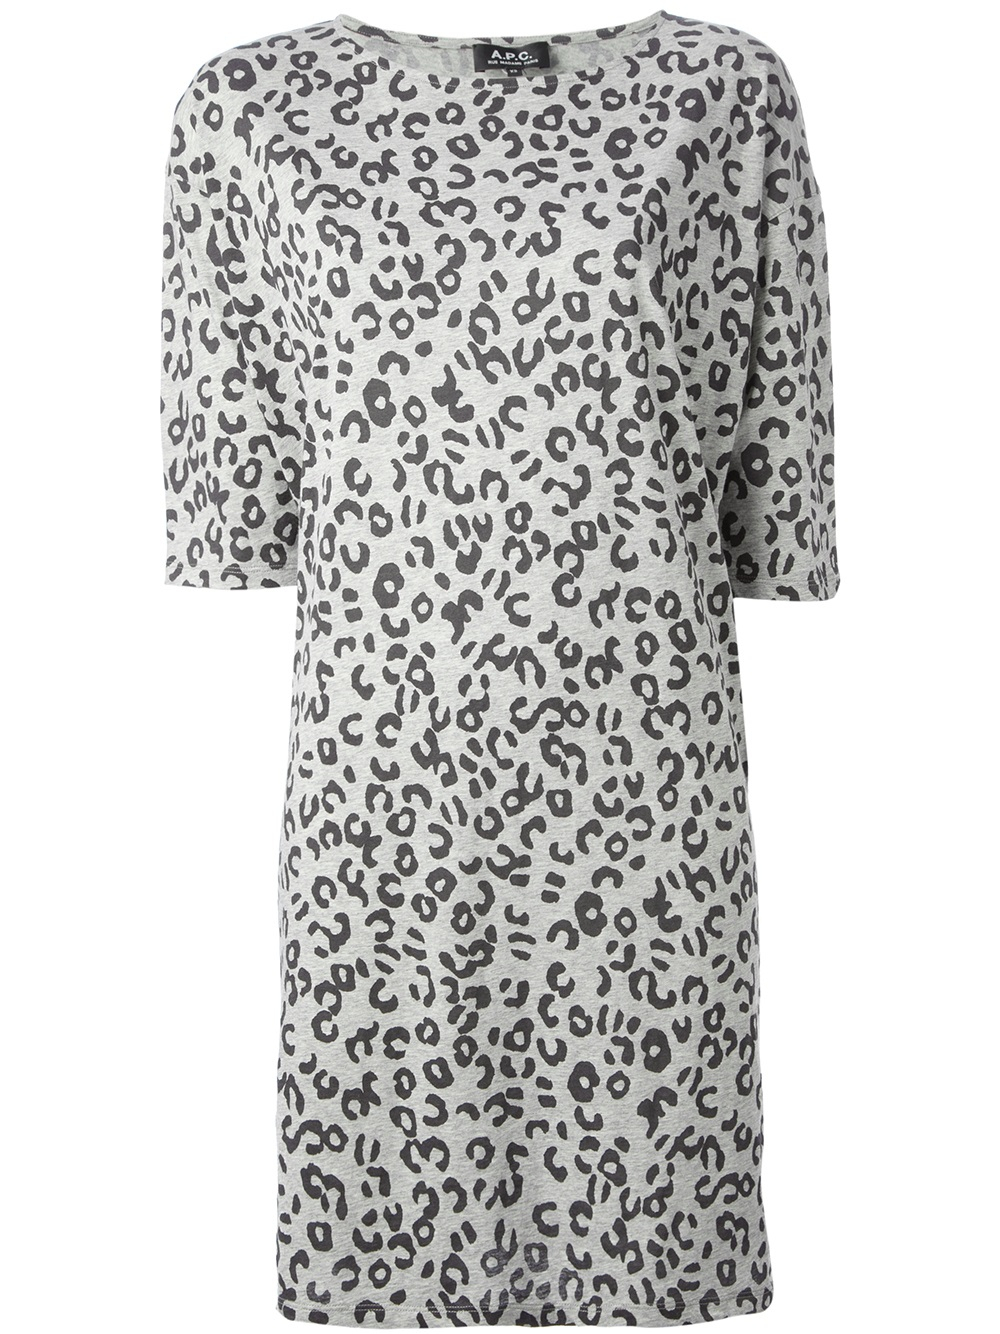 gray leopard print dress